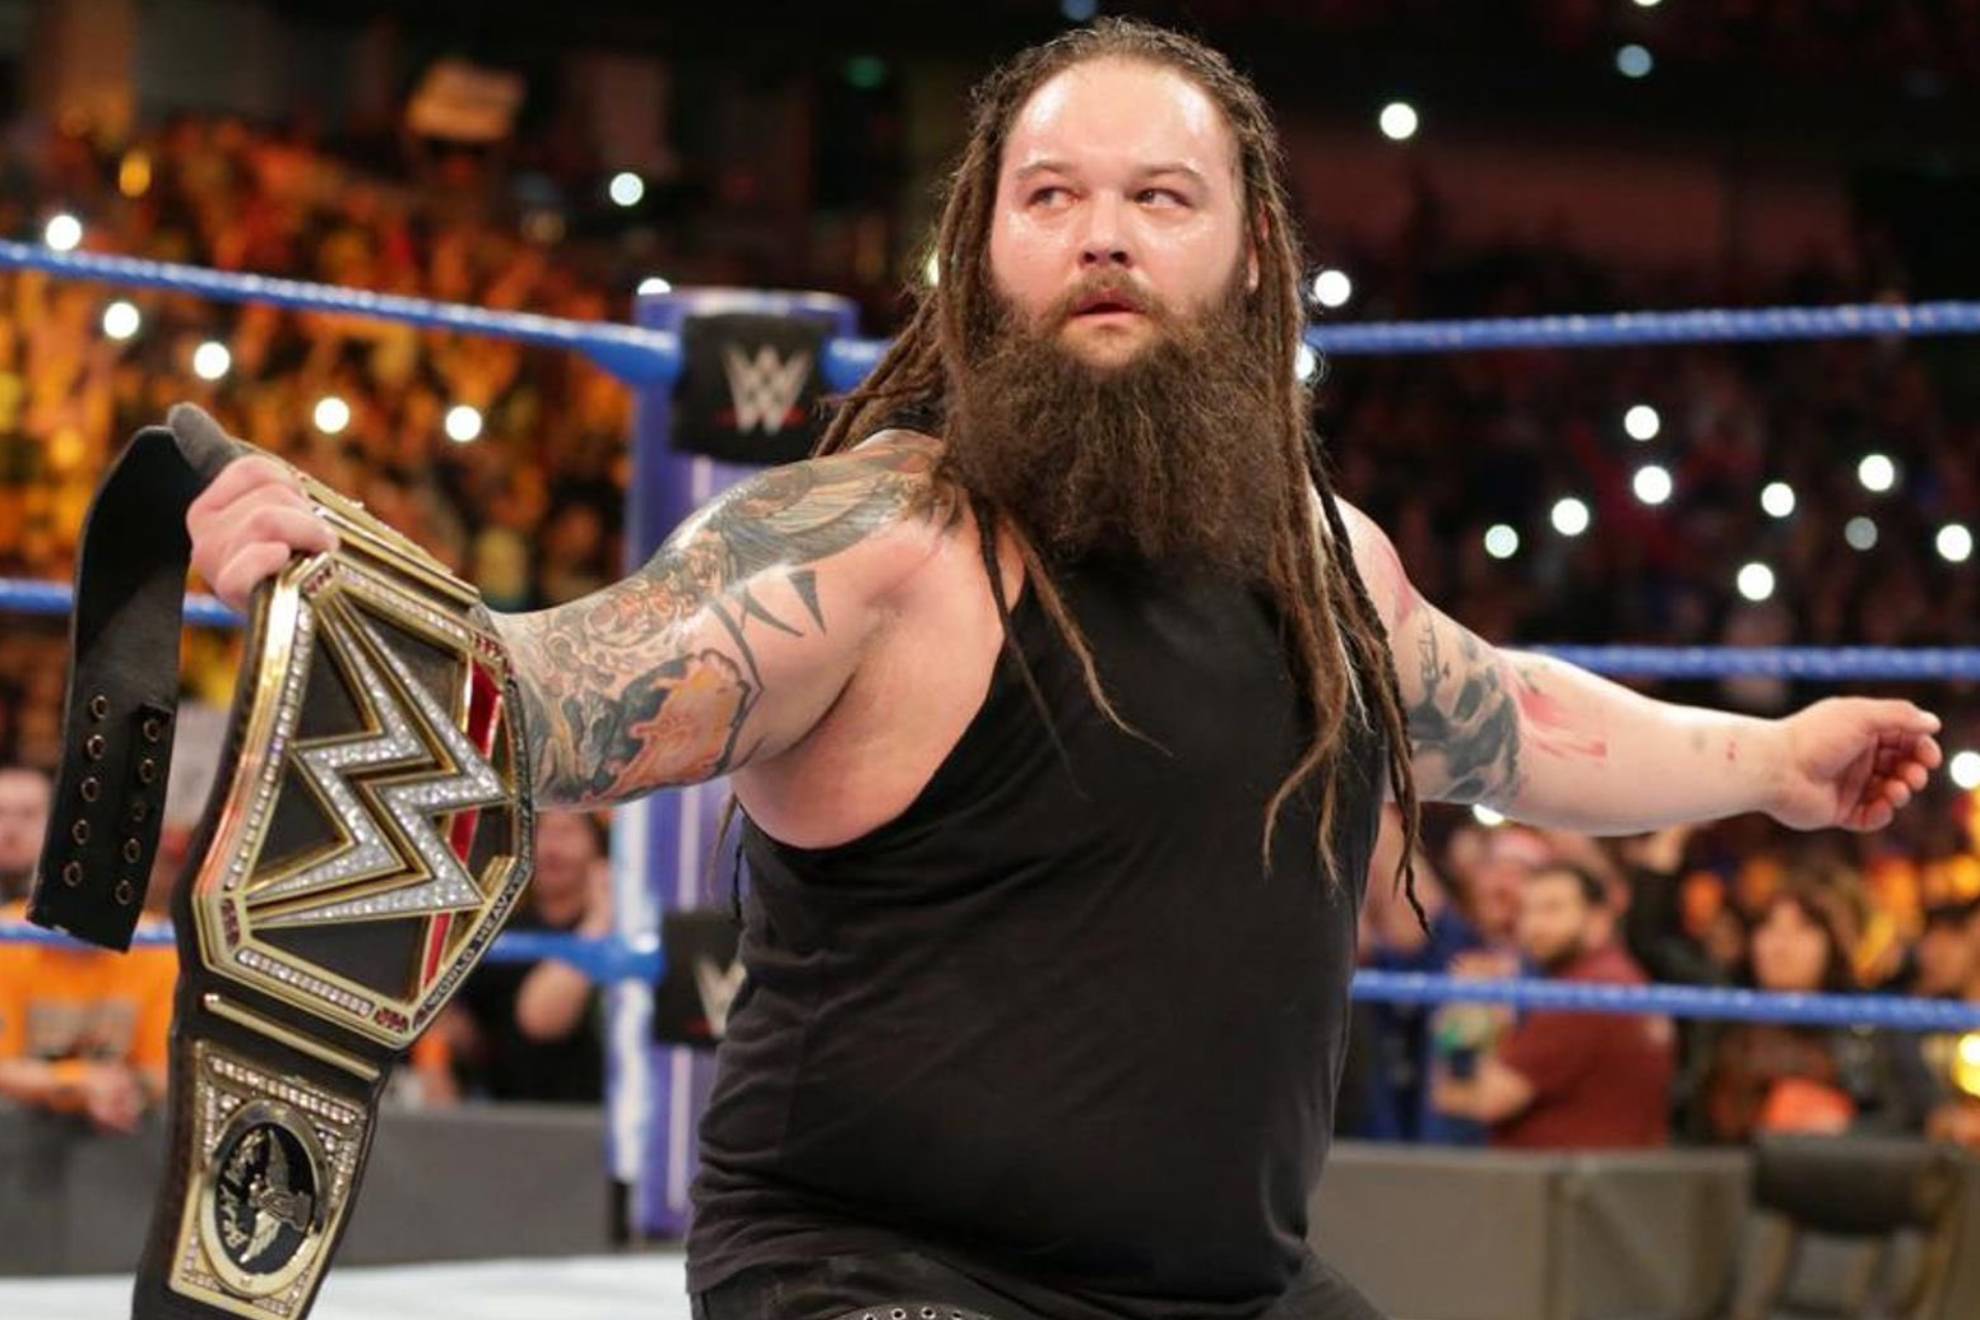 Muere Bray Wyatt, ex súper estrella de WWE ¿De qué murió a sus 36 años?